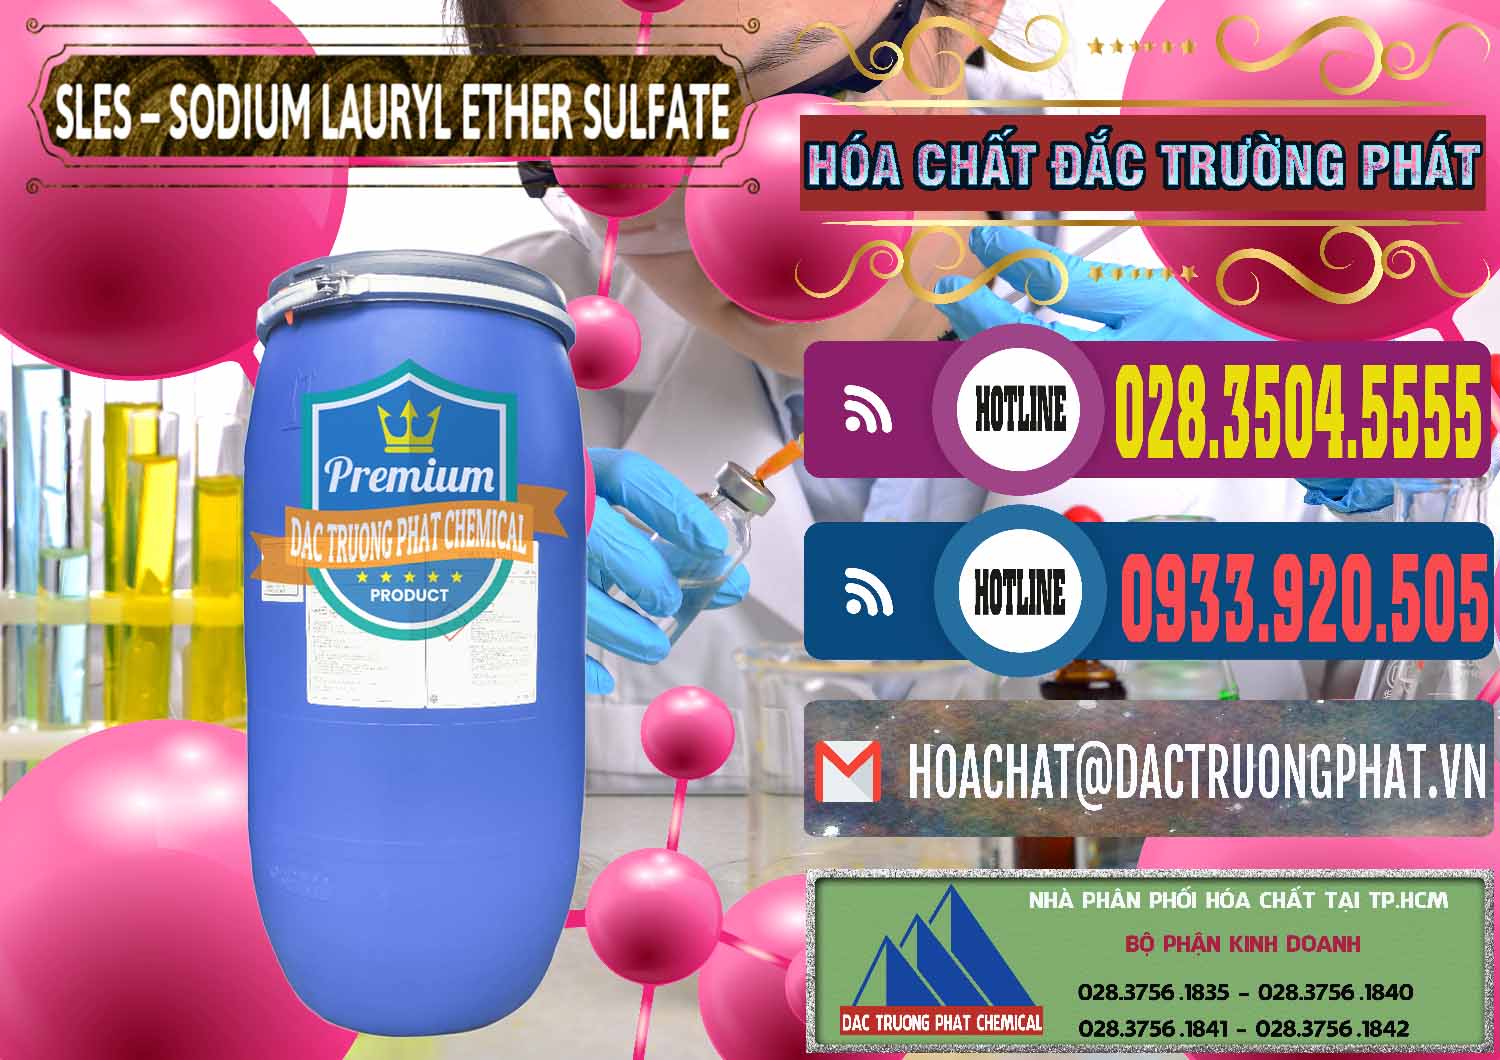 Nơi chuyên cung cấp - bán Chất Tạo Bọt Sles - Sodium Lauryl Ether Sulphate Kao Indonesia - 0046 - Đơn vị chuyên cung cấp & kinh doanh hóa chất tại TP.HCM - muabanhoachat.com.vn